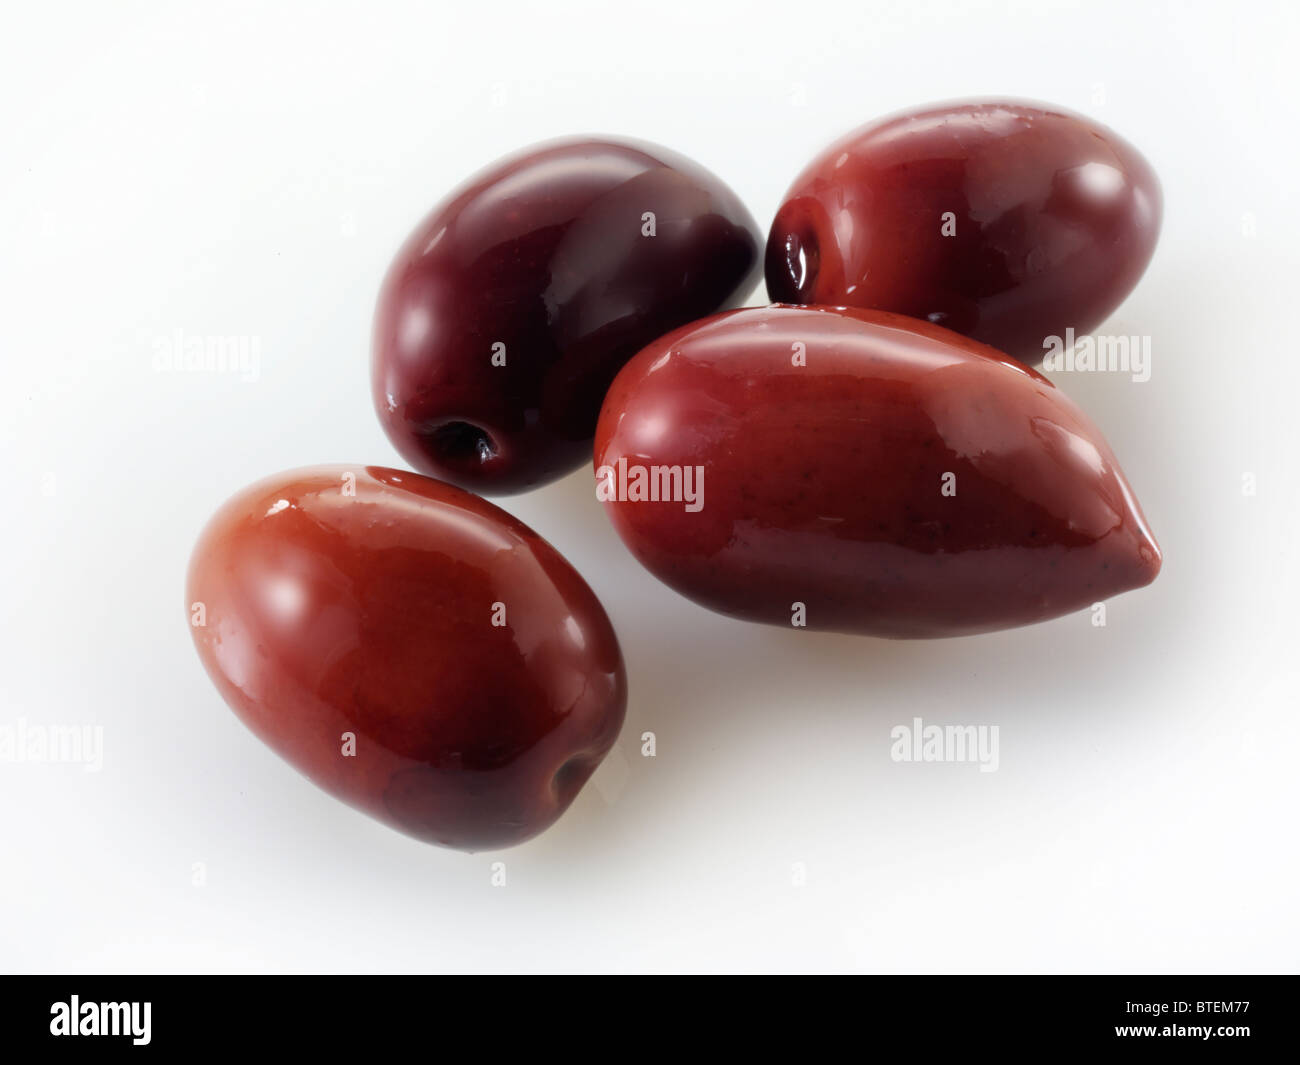 Whole Kalamata olives Stock Photo